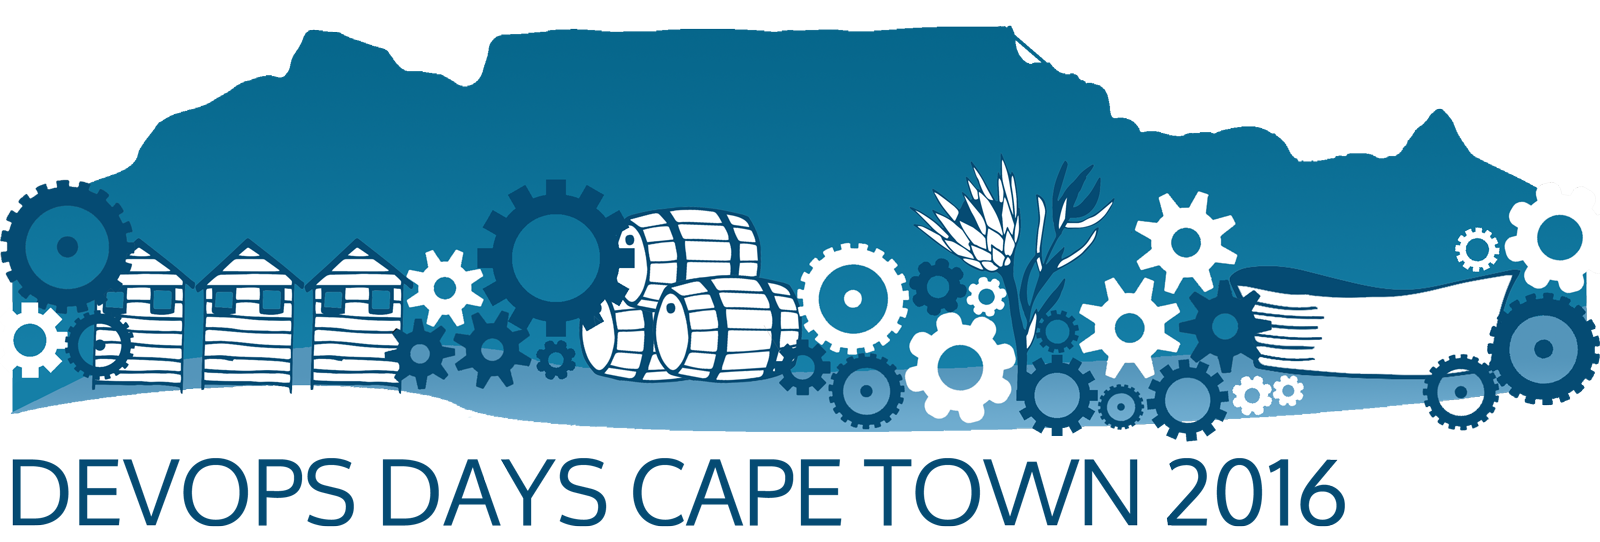 devopsdays Cape Town 2016